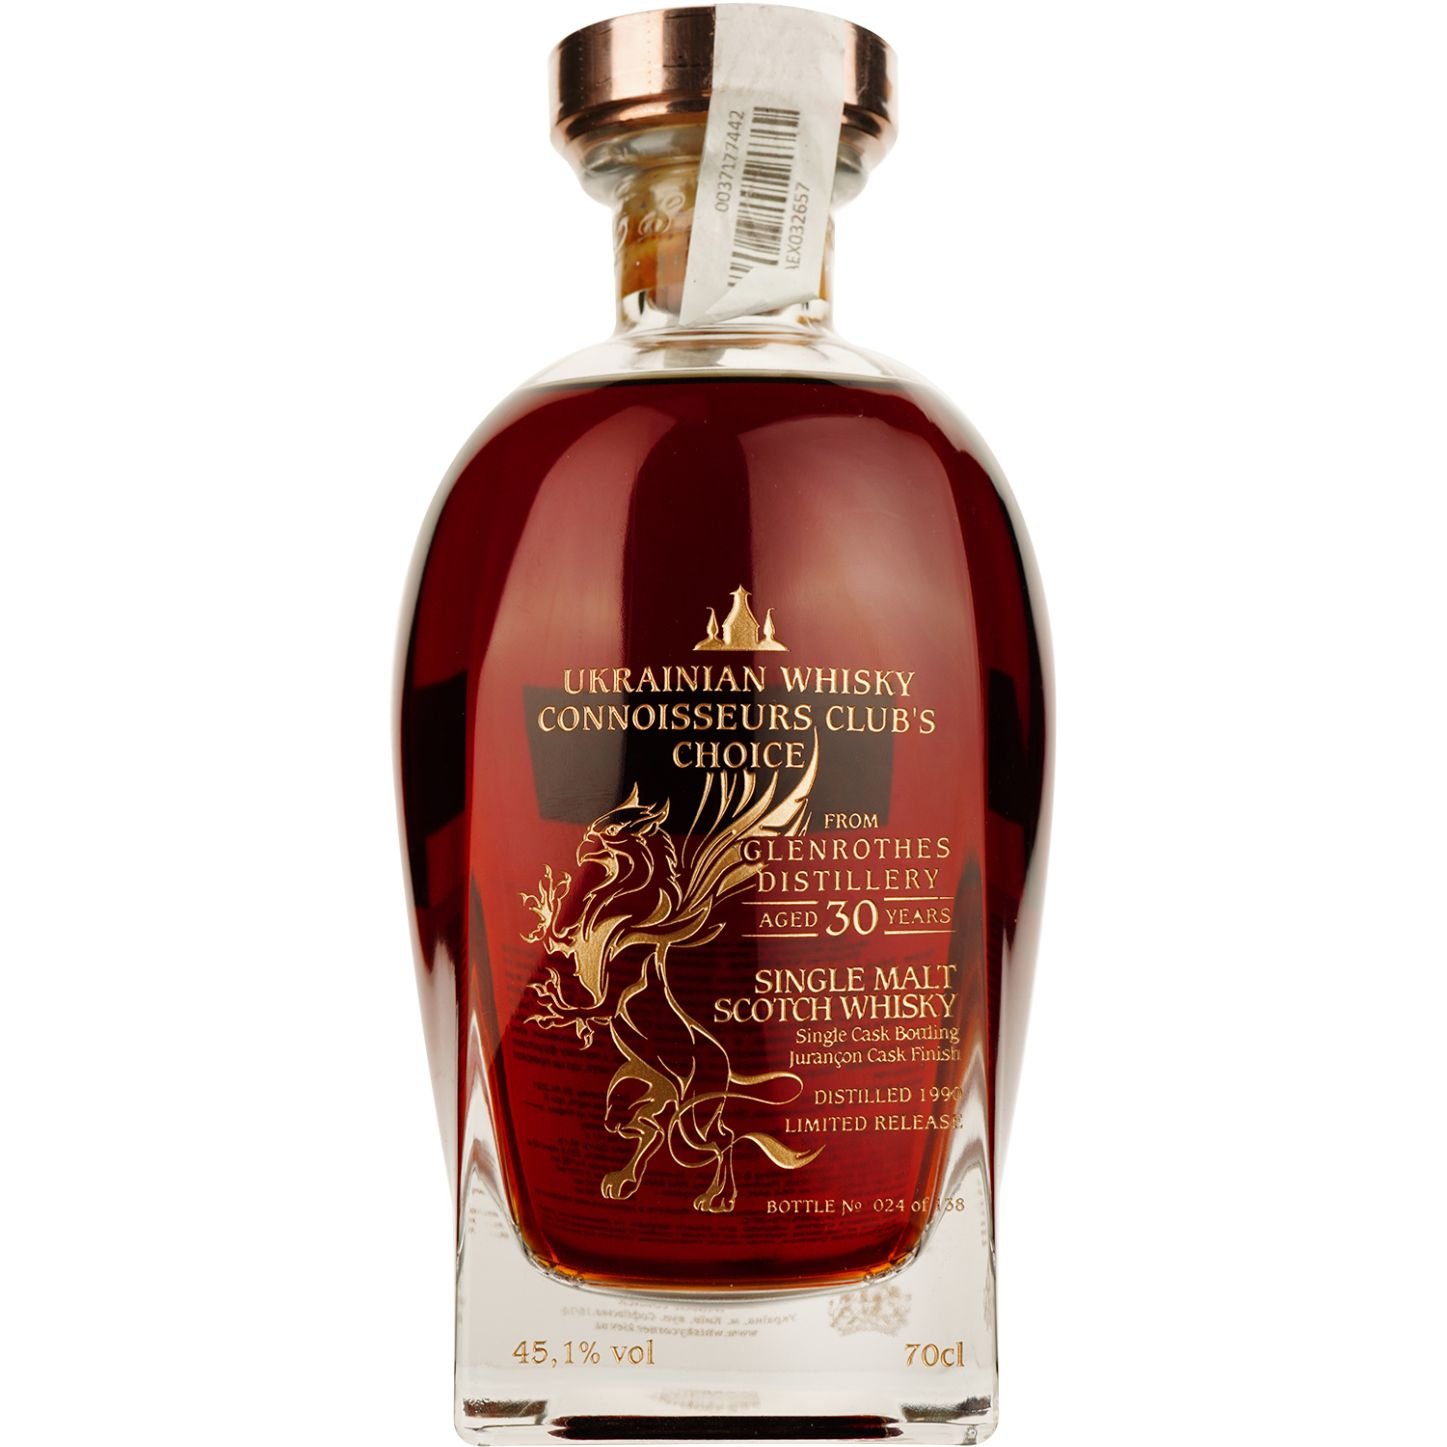 Віскі Glenrothes 30 Years Old Jurancon Single Malt Scotch Whisky, у подарунковій упаковці, 45,1%, 0,7 л - фото 3